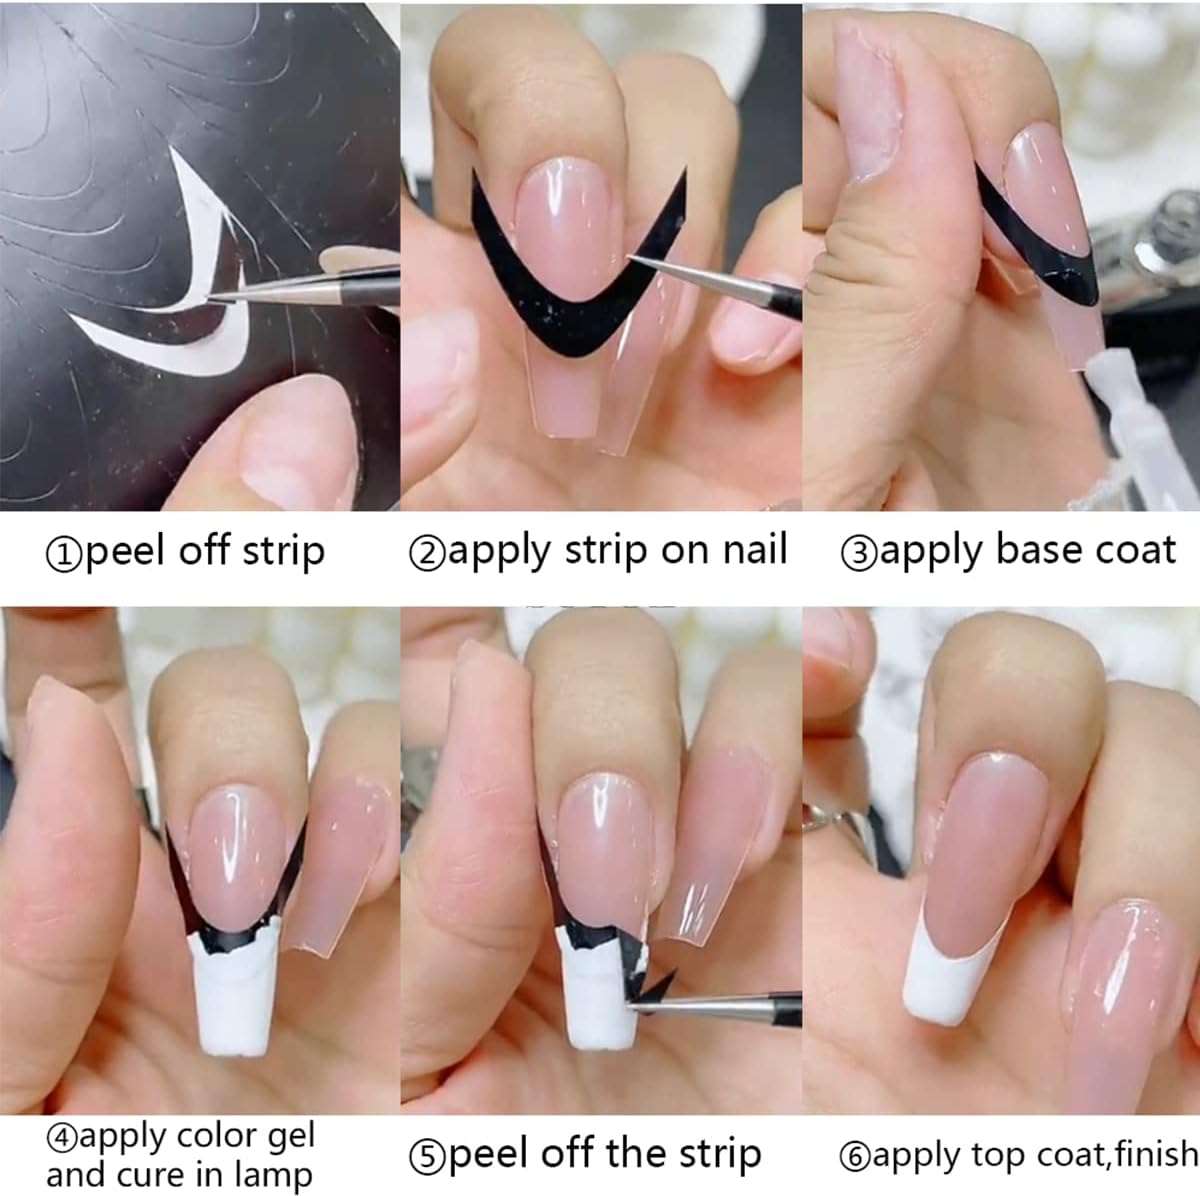 louis vuitton nail art - Google Search  Louis vuitton nails, Nail designs,  Acrylic nail designs